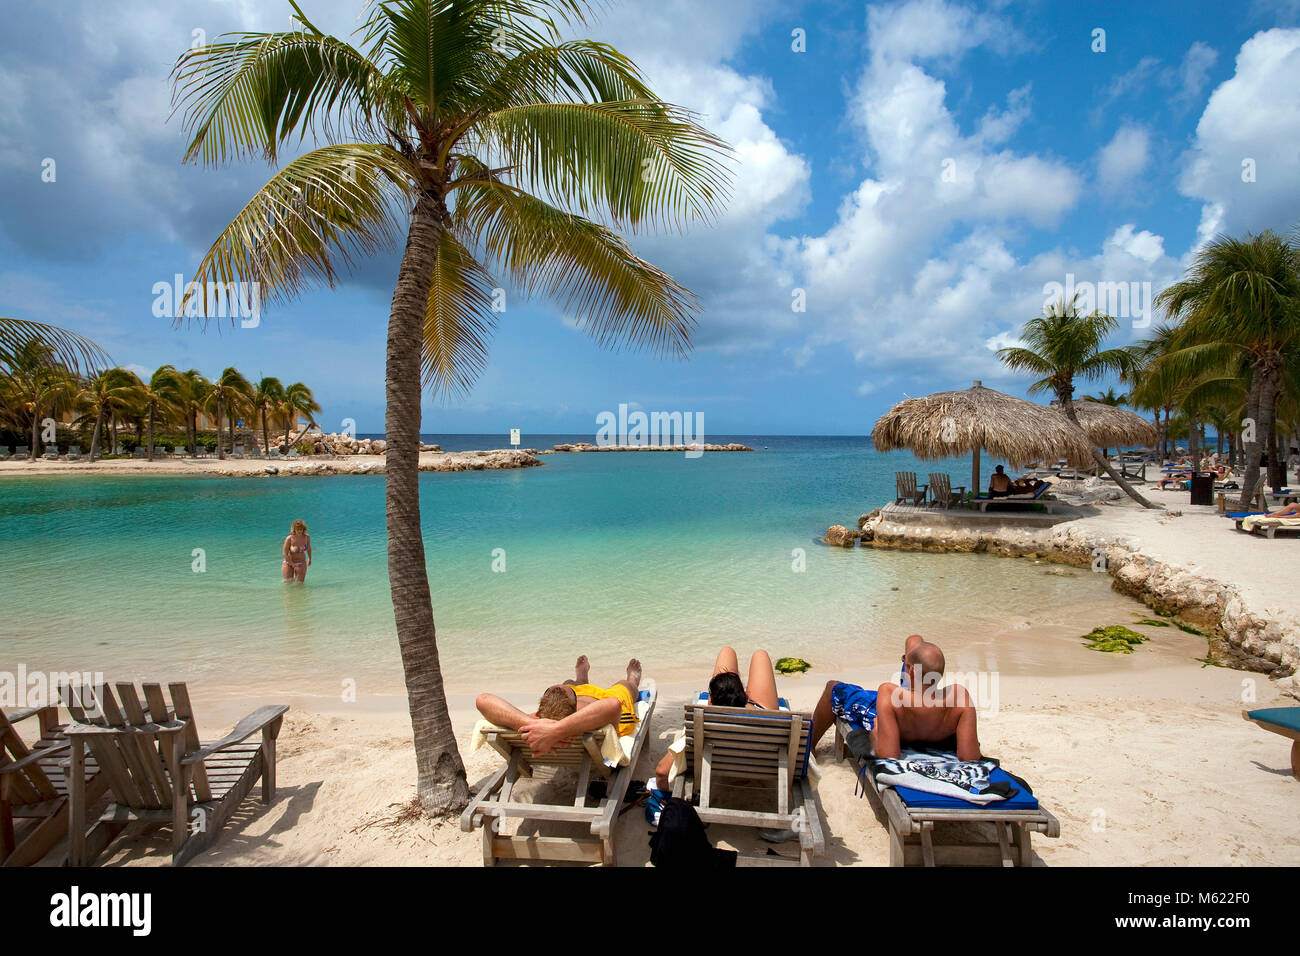 Die Menschen Baden und Sonnen am idyllischen Strand von Lions Dive Resort, Curacao, Niederländische Antillen, Karibik, Karibik Stockfoto